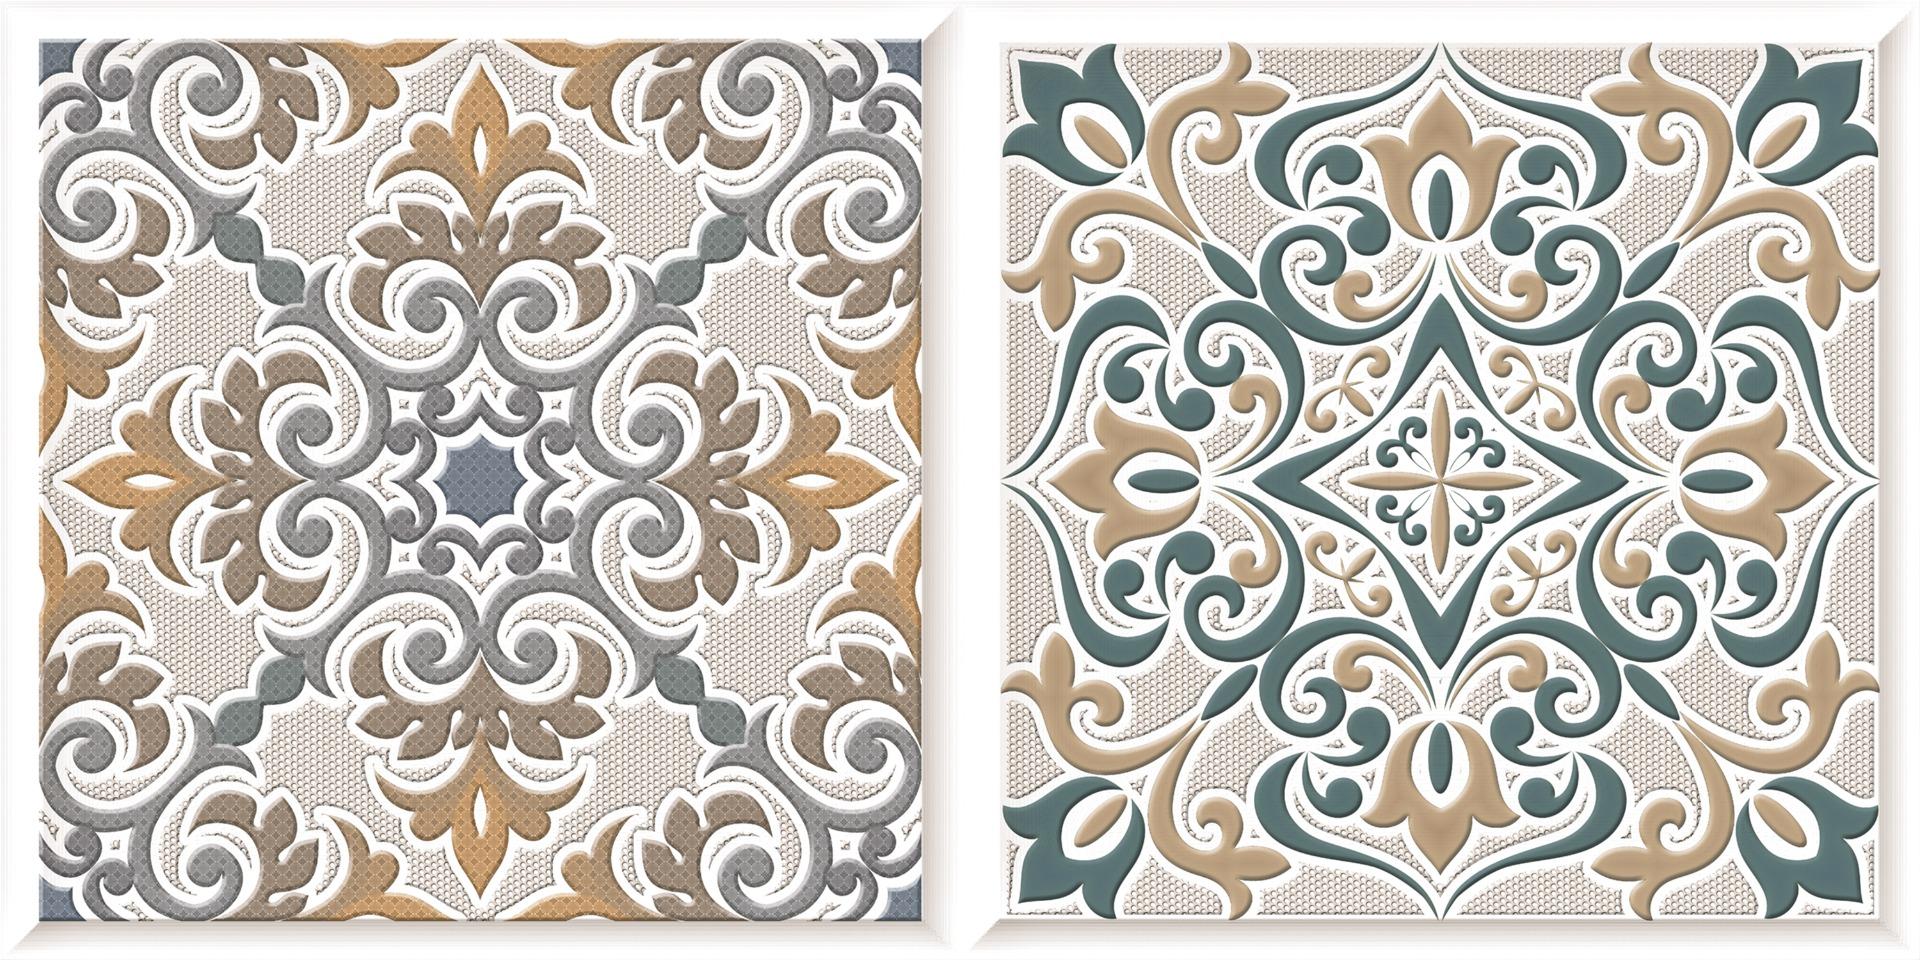 Digital Glazed Vitrified Tiles for Bathroom Tiles, Living Room Tiles, Kitchen Tiles, Bedroom Tiles, Balcony Tiles